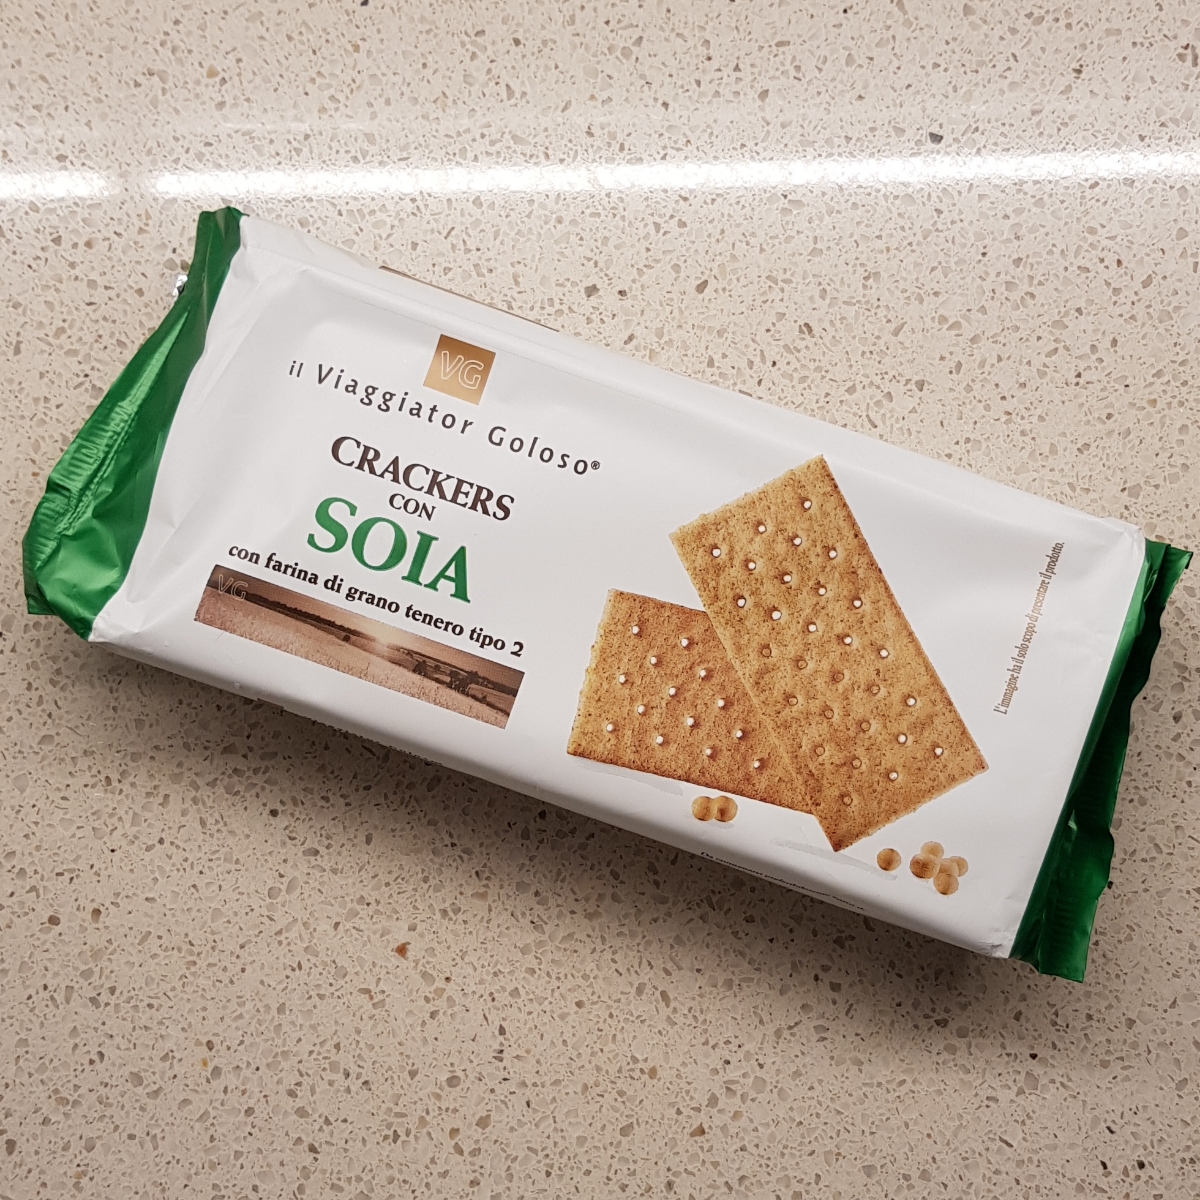 Unes Maxi Spa Viaggiator Goloso Crackers con Soia Reviews